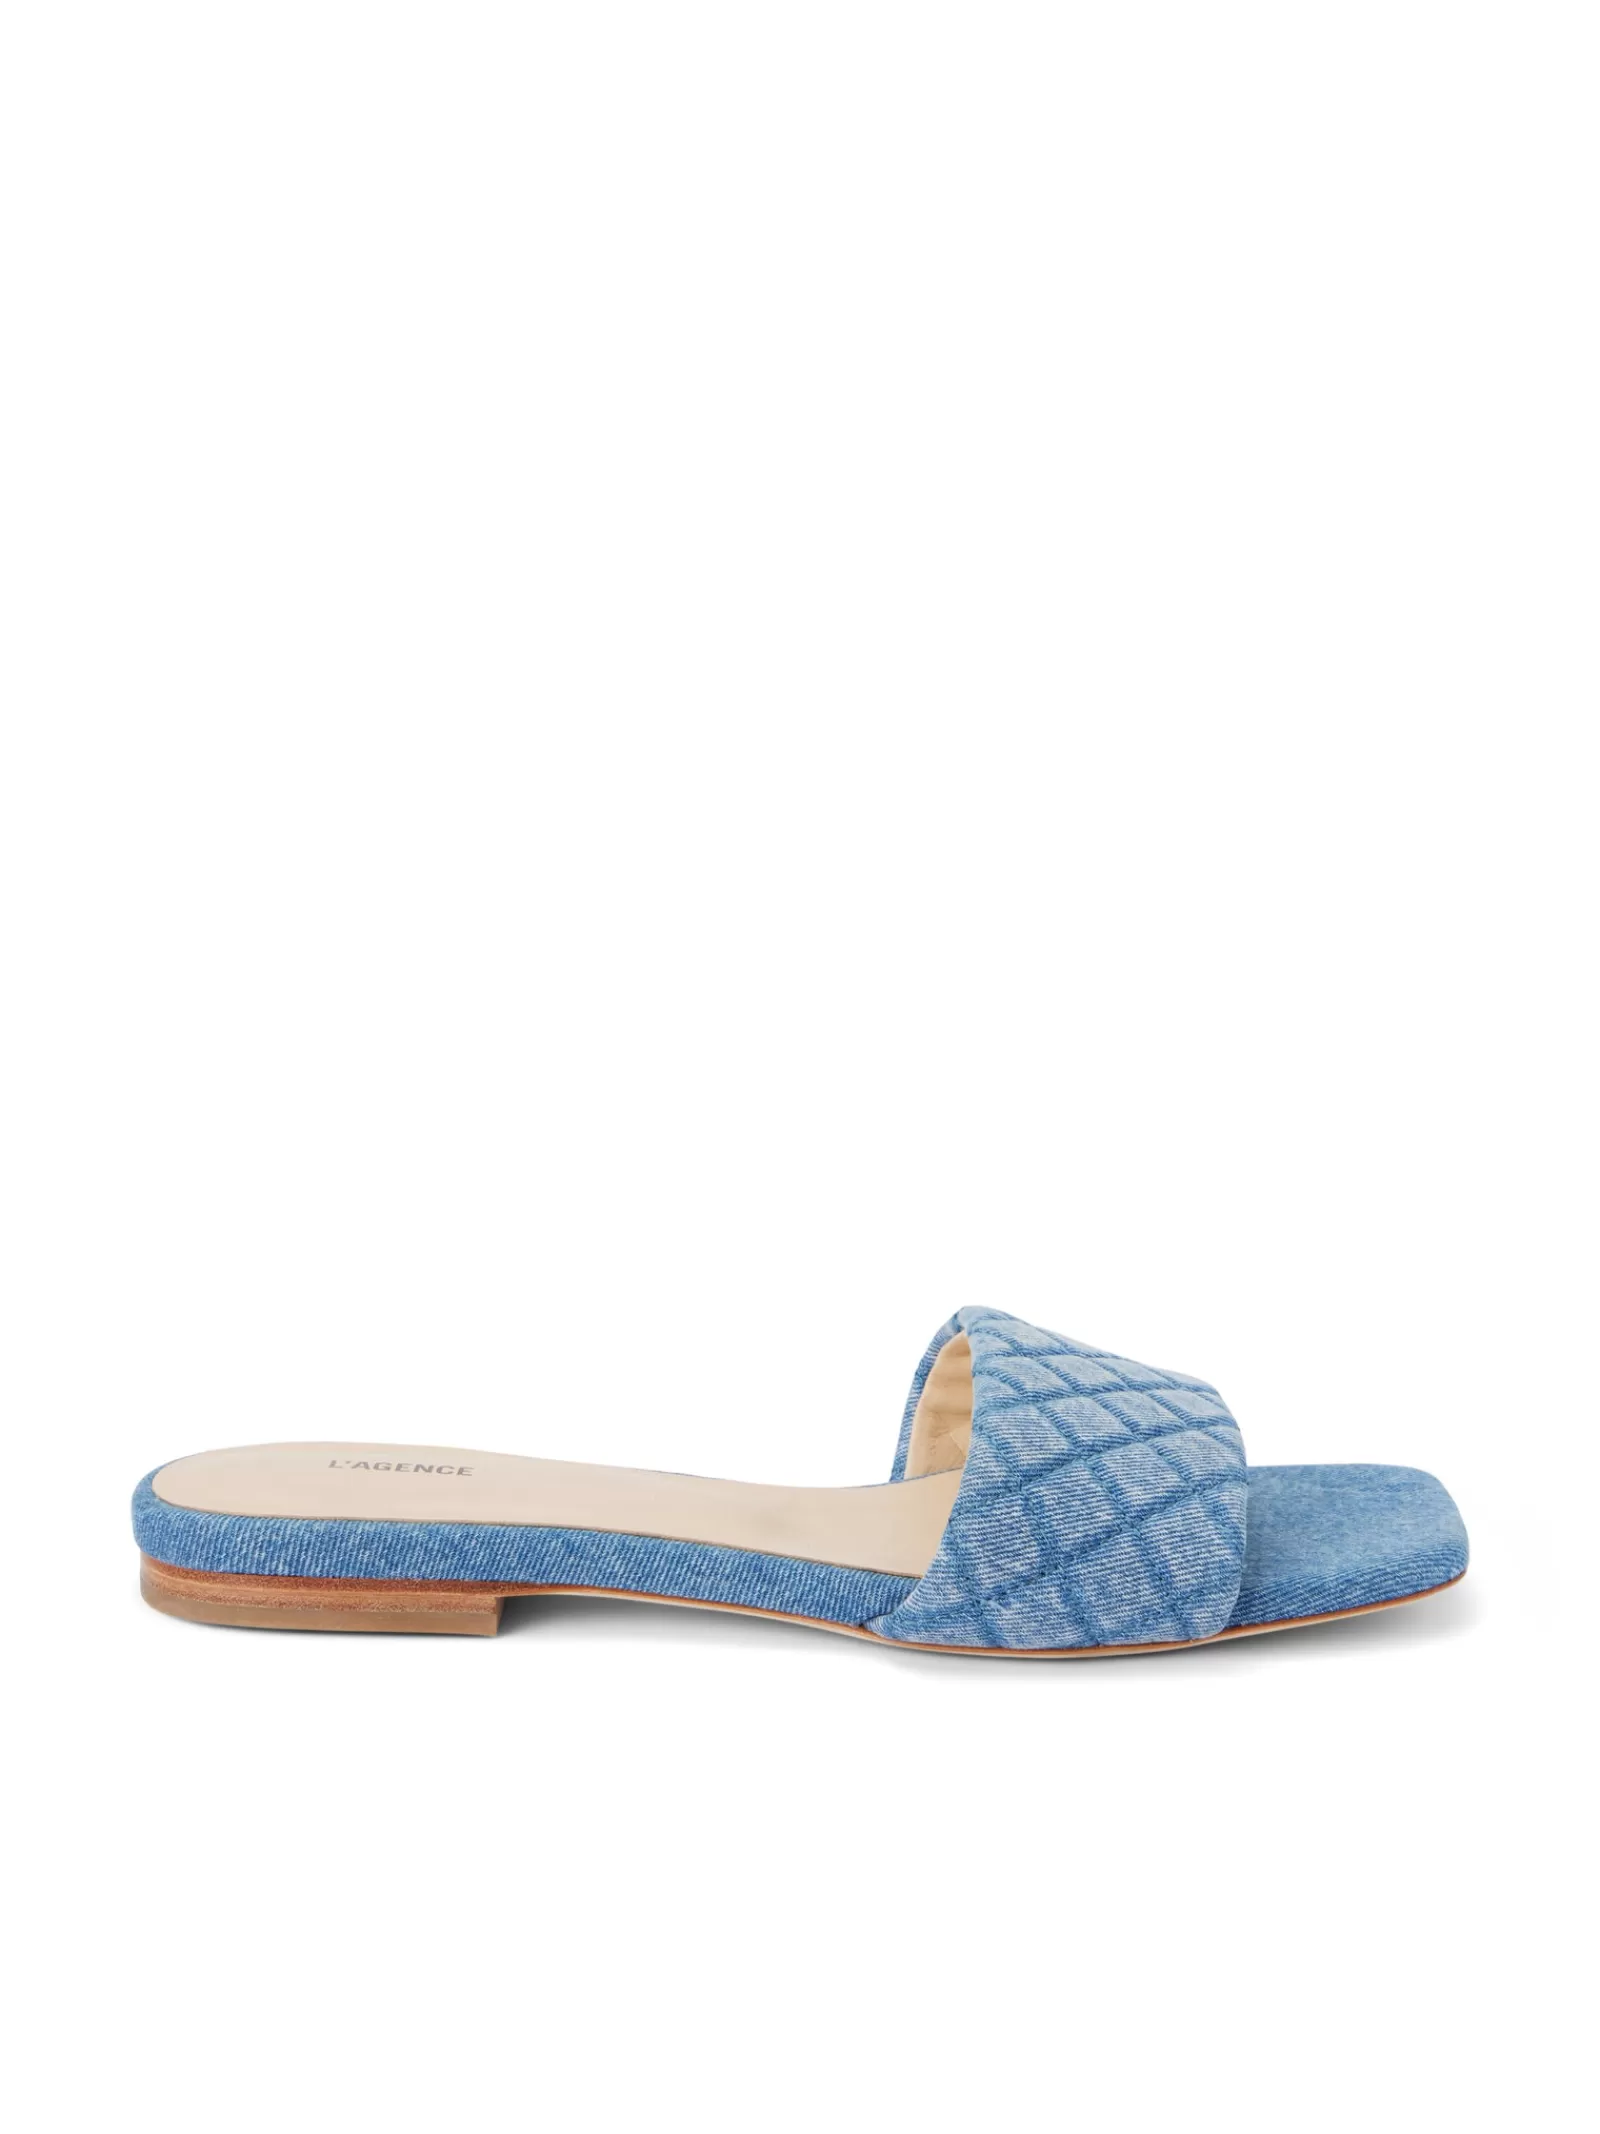 L'AGENCE Aloise Denim Slide Sandal< Spring Collection | Sandals & Wedges